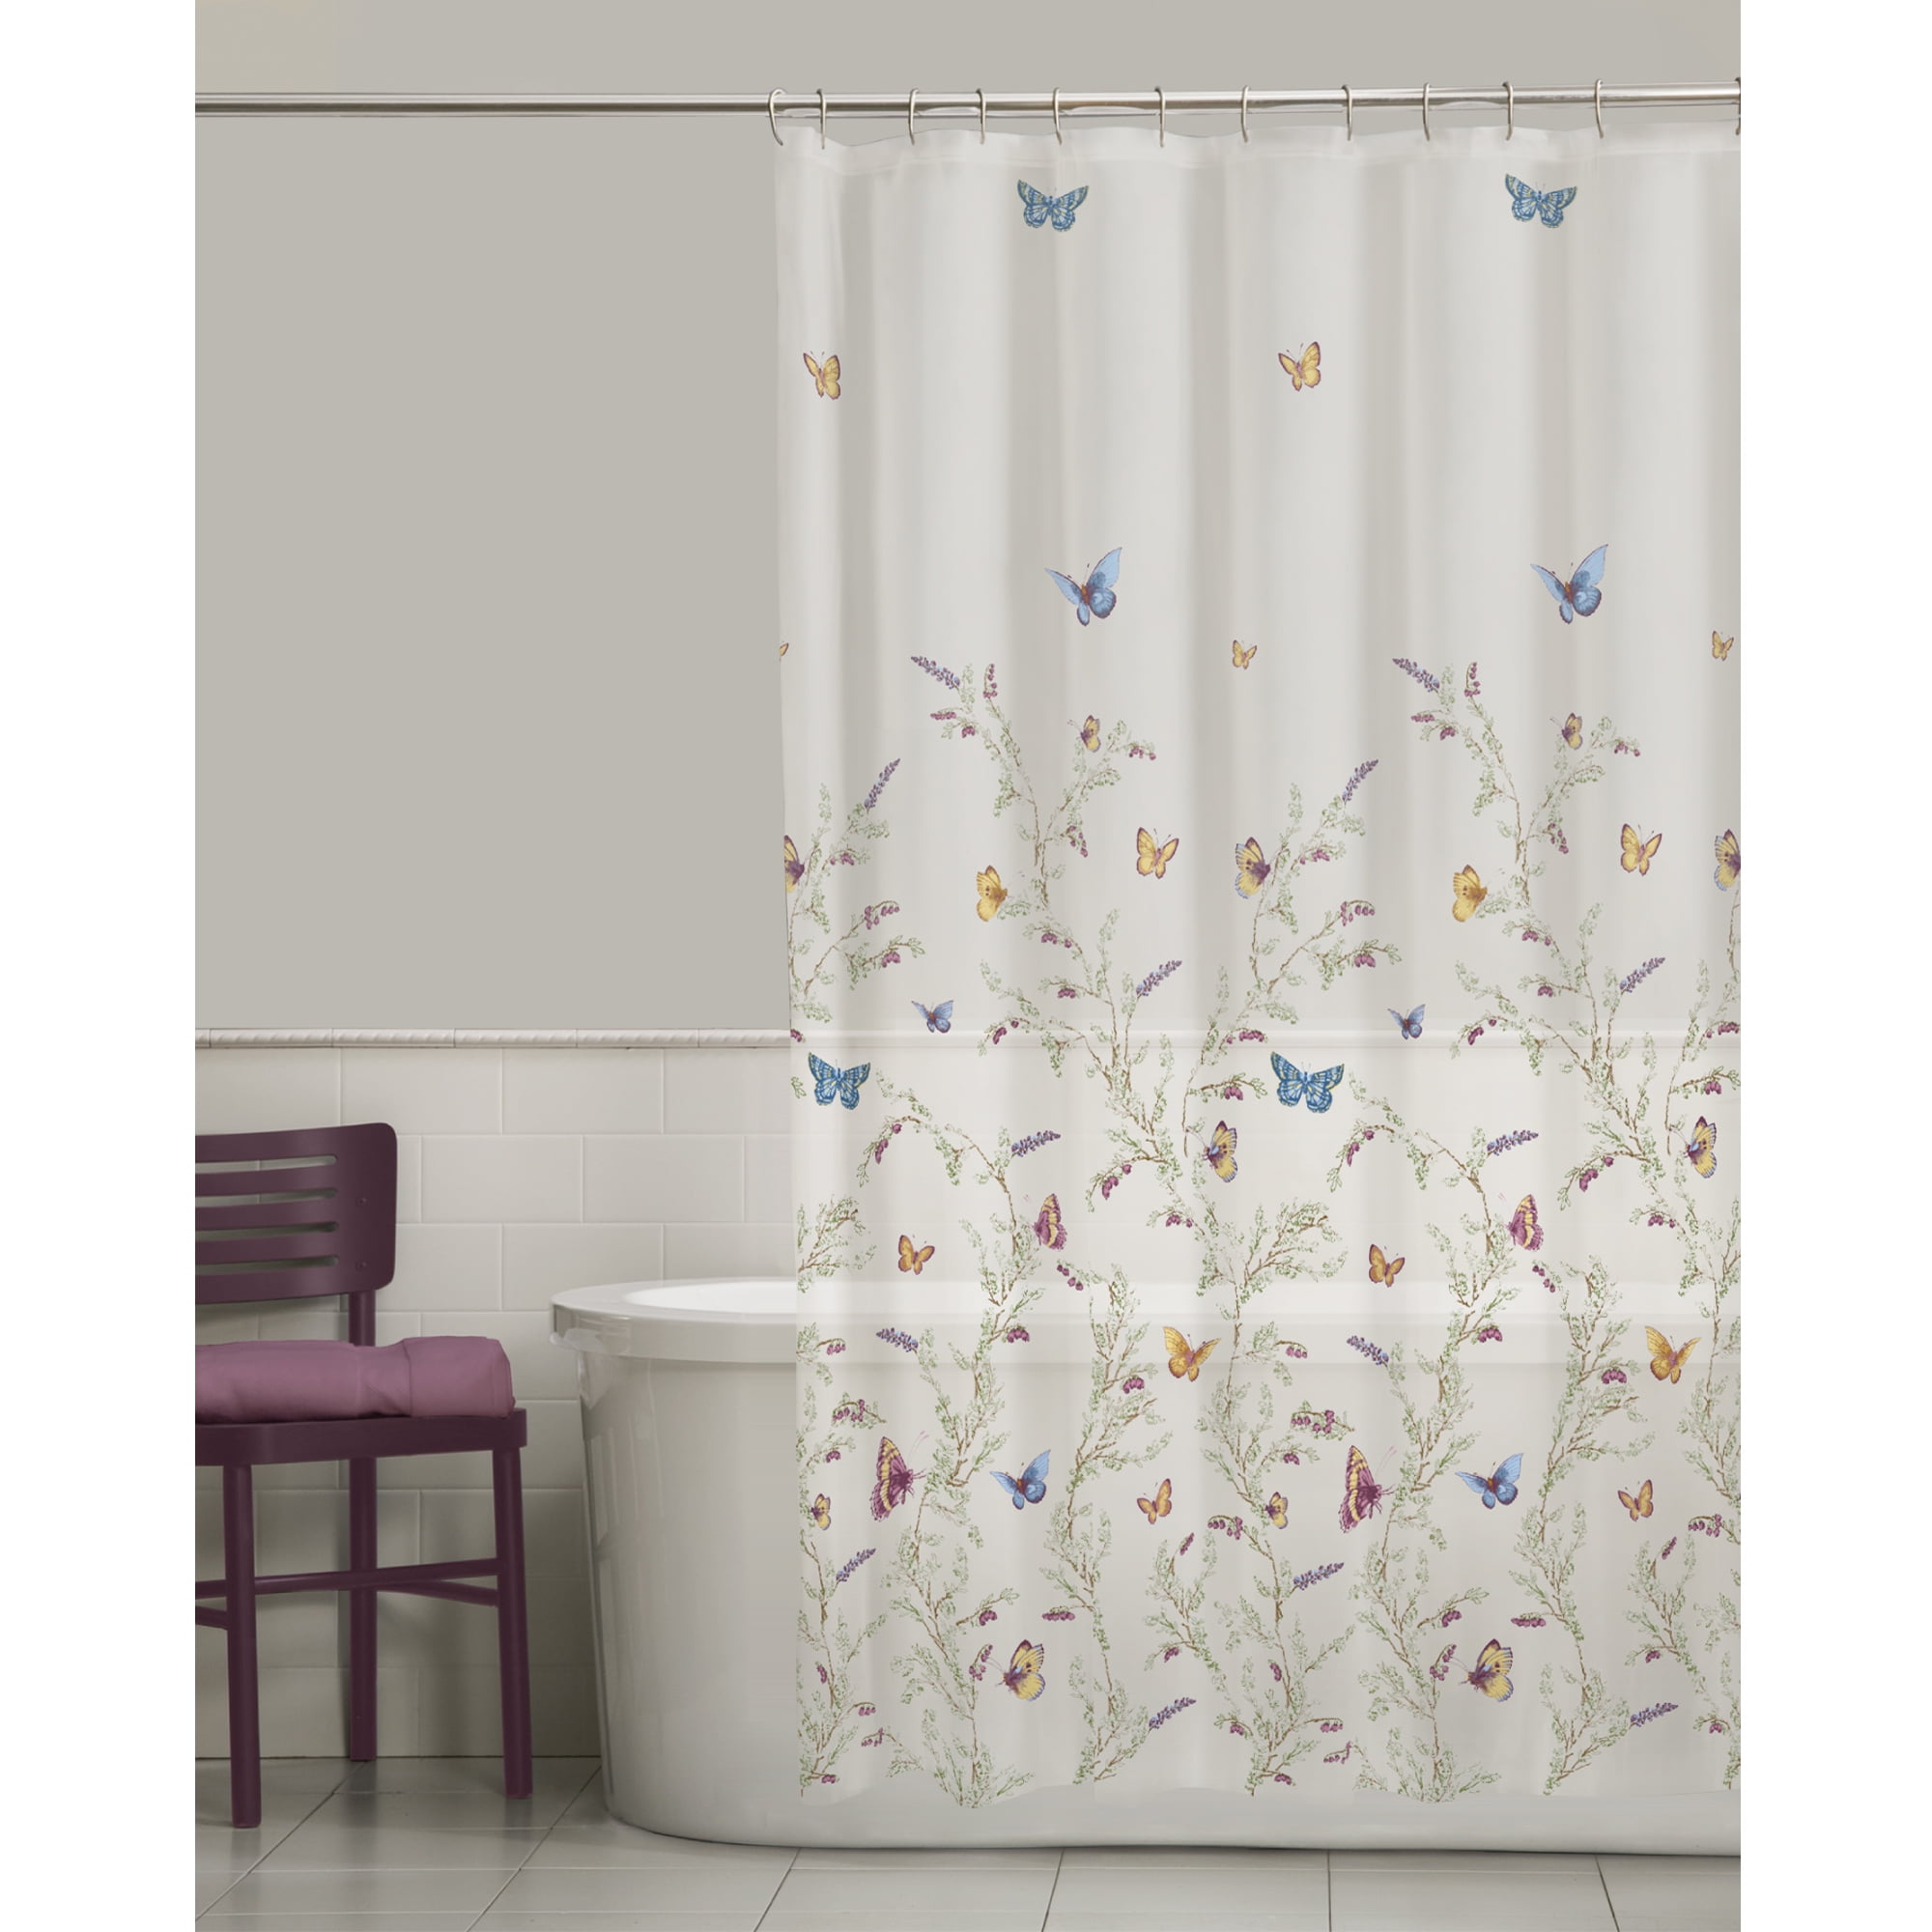 Darla Ruched Floral Bathroom Shower Curtain x 72 Blush 